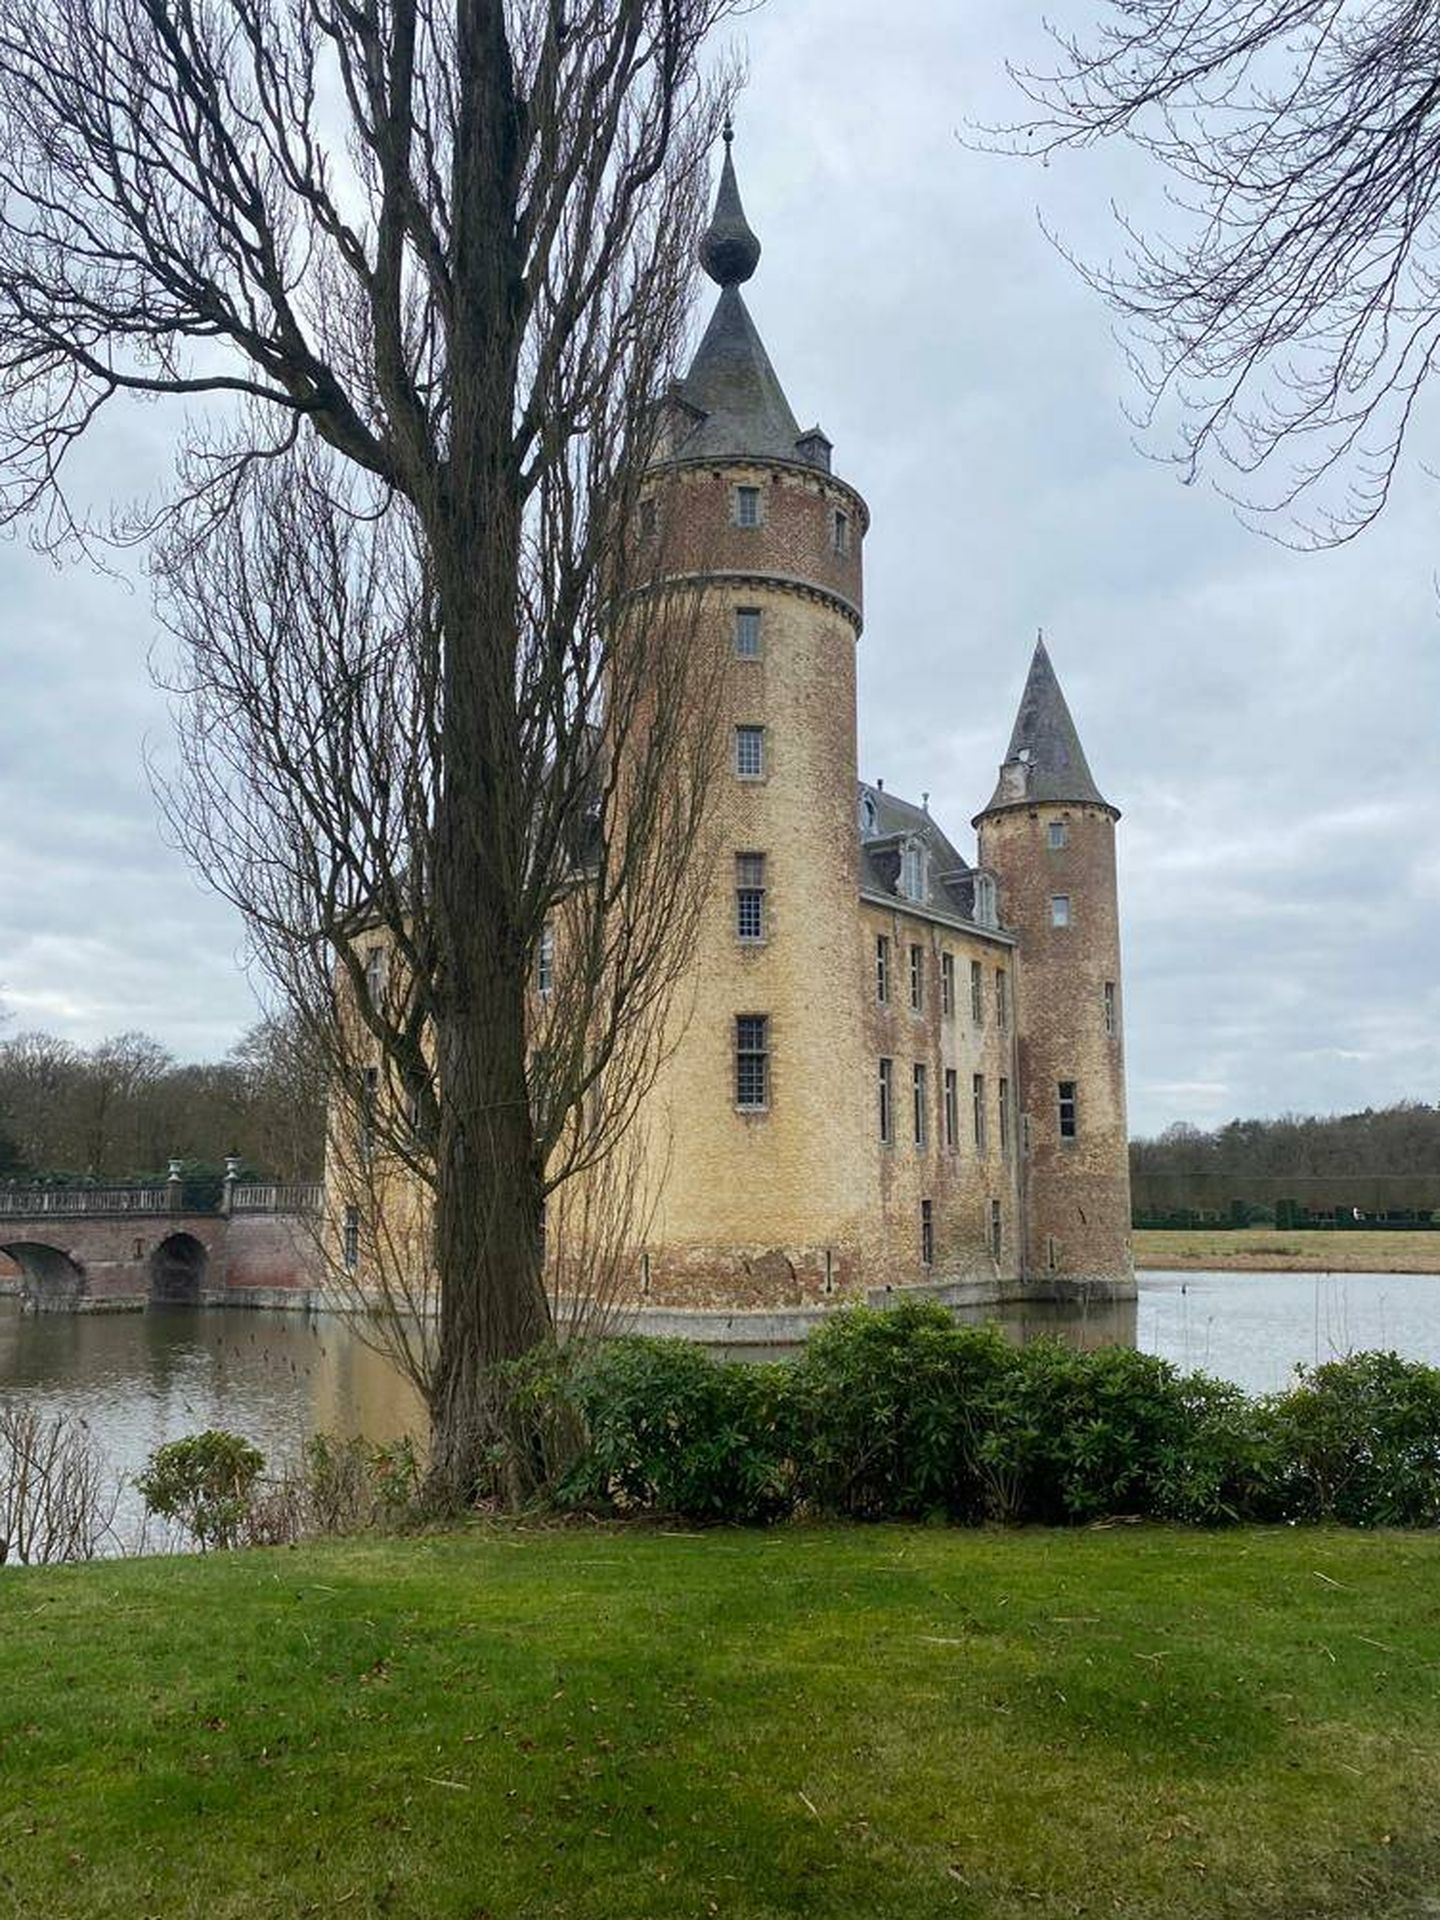 Fotos 'château' Axel Vervoordt, en Amberes. (Cortesía)